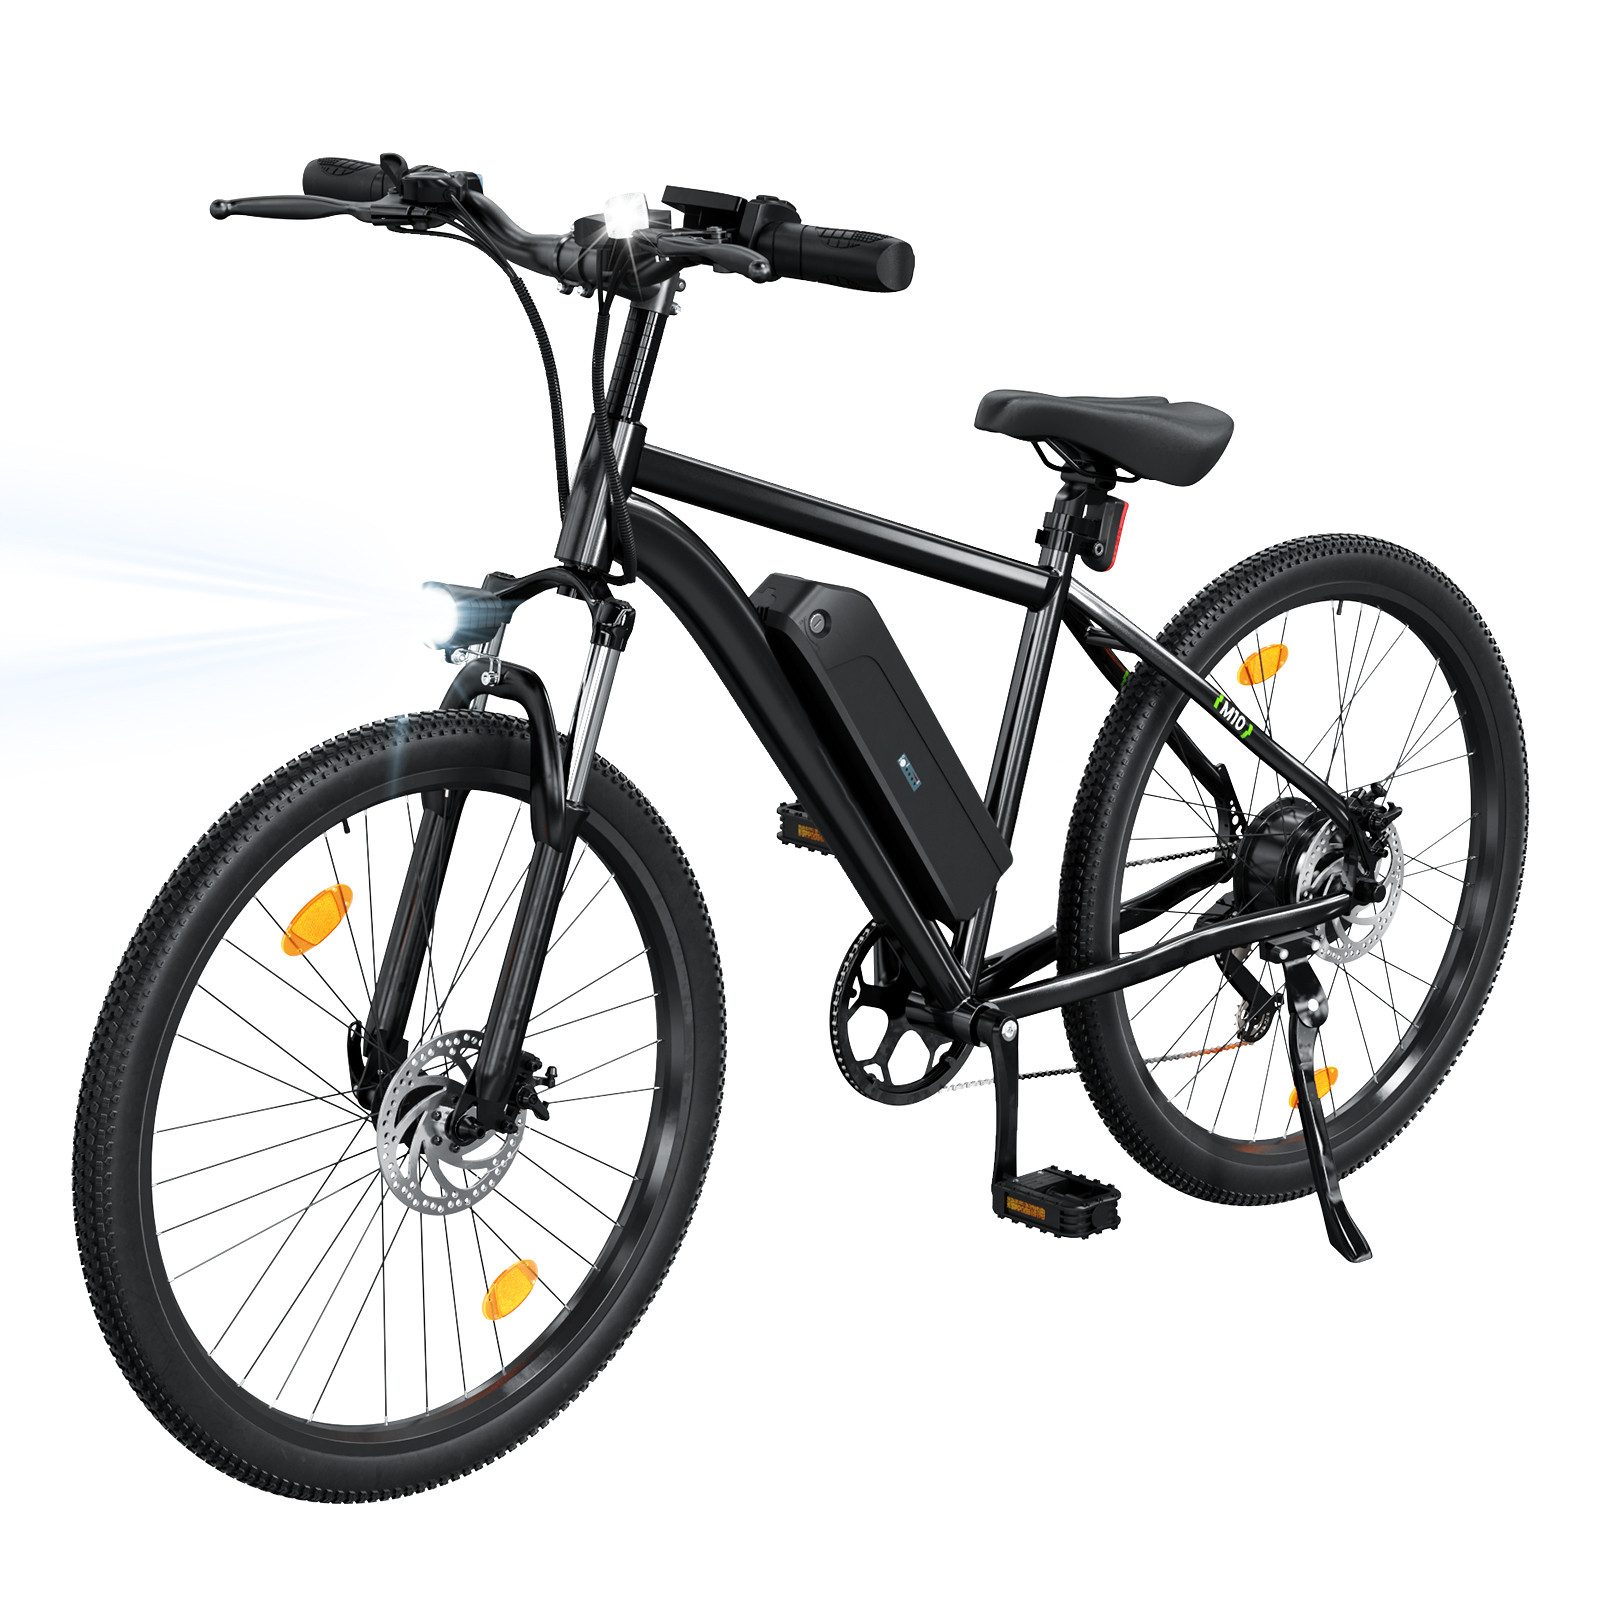 iscooter E-Bike 26-Zoll-E-Bike mit abnehmbarem 10,4-Ah-Akku, 5-Gang-Geschwindigkeit, Kettenschaltung, Heckmotor, ABS Duales Bremssystem, Höchstlast 150 kg, 7-Gang Shimano Schaltung